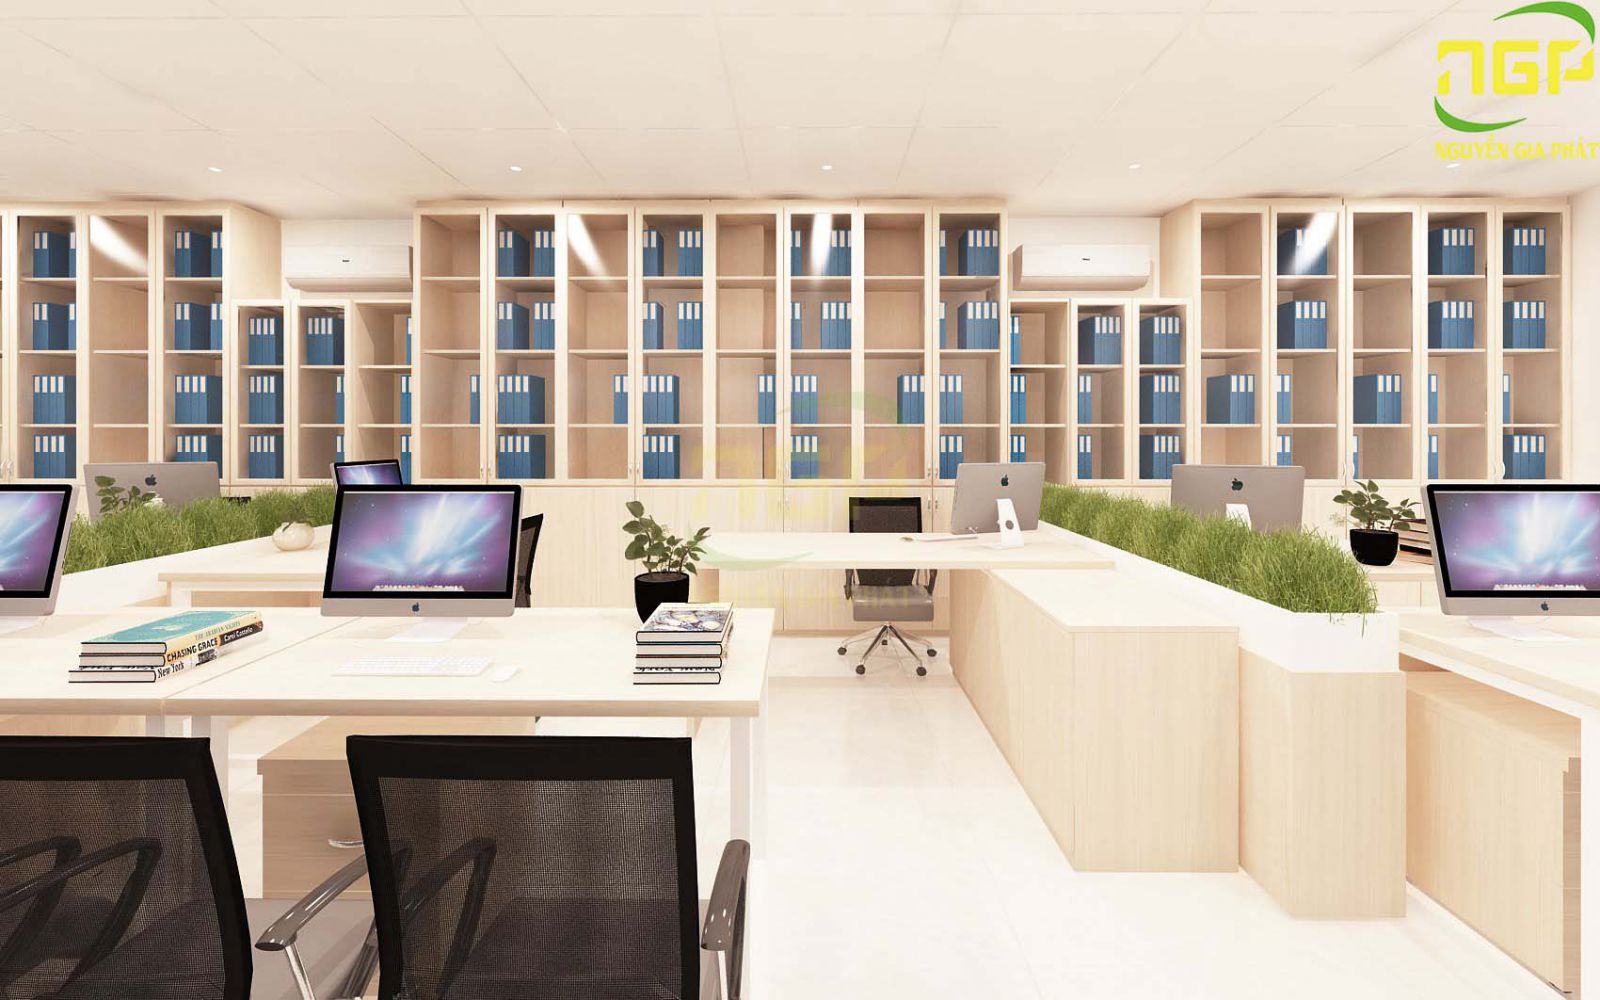 Thiết kế nội thất văn phòng Biên Hòa sẽ mang đến không gian làm việc hoàn hảo, chuyên nghiệp và tiện nghi nhất cho công ty của bạn. Với các giải pháp thiết kế hiện đại và đội ngũ kiểm tra chất lượng chuyên nghiệp, chúng tôi sẽ tạo nên một không gian làm việc đẳng cấp để nâng cao hiệu quả công việc của nhân viên.